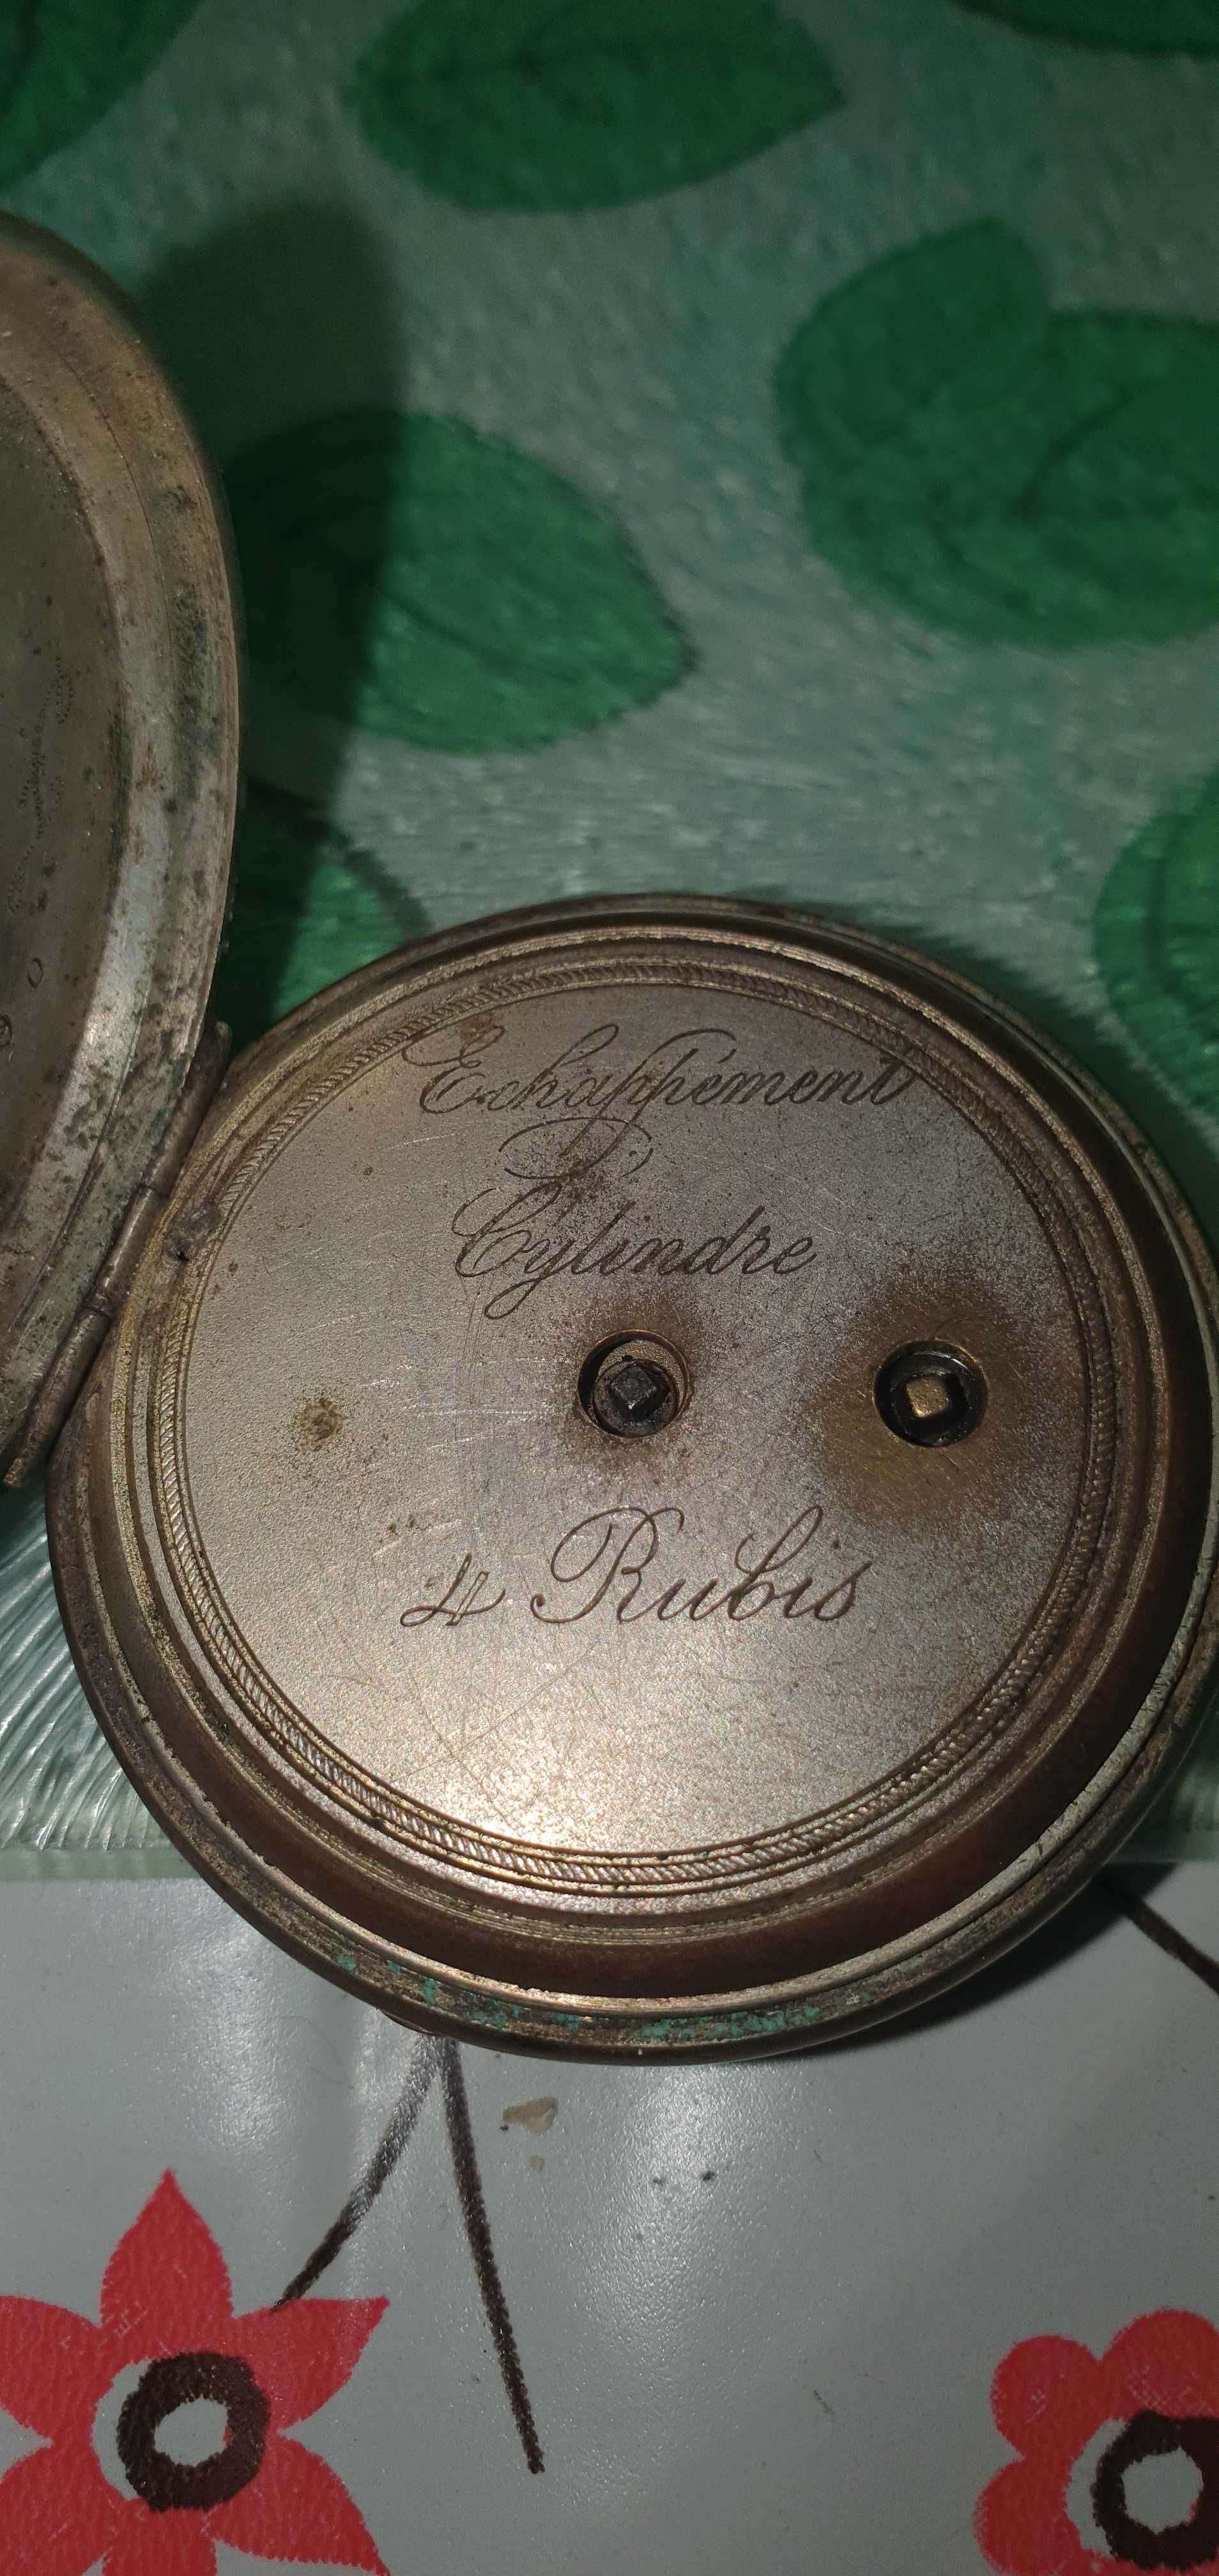 Zegarek kieszonkowy Echappement Cylindre 4 Rubis - antyk